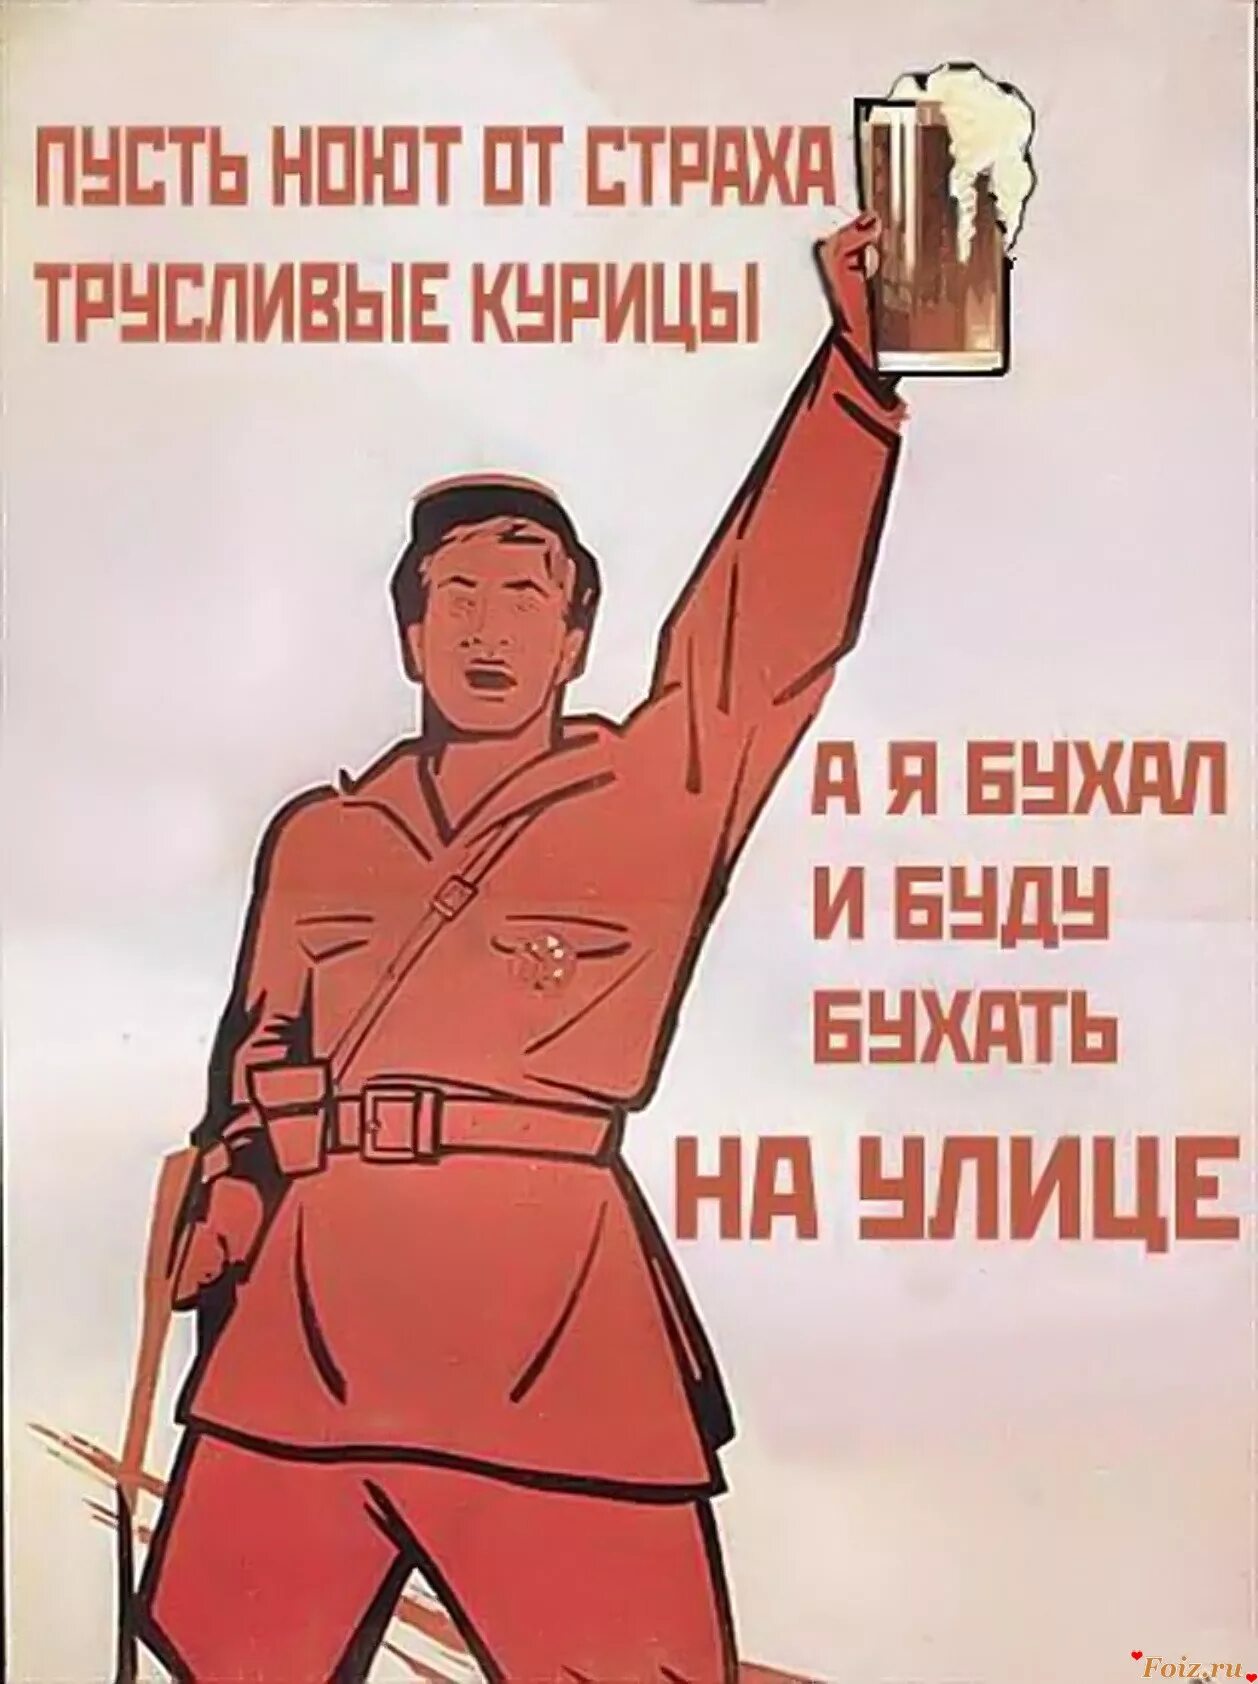 Прикольные плакаты. Советские плакаты. Плакаты с лозунгами. Прикольные советские плакаты. Мой друг не пьет и не